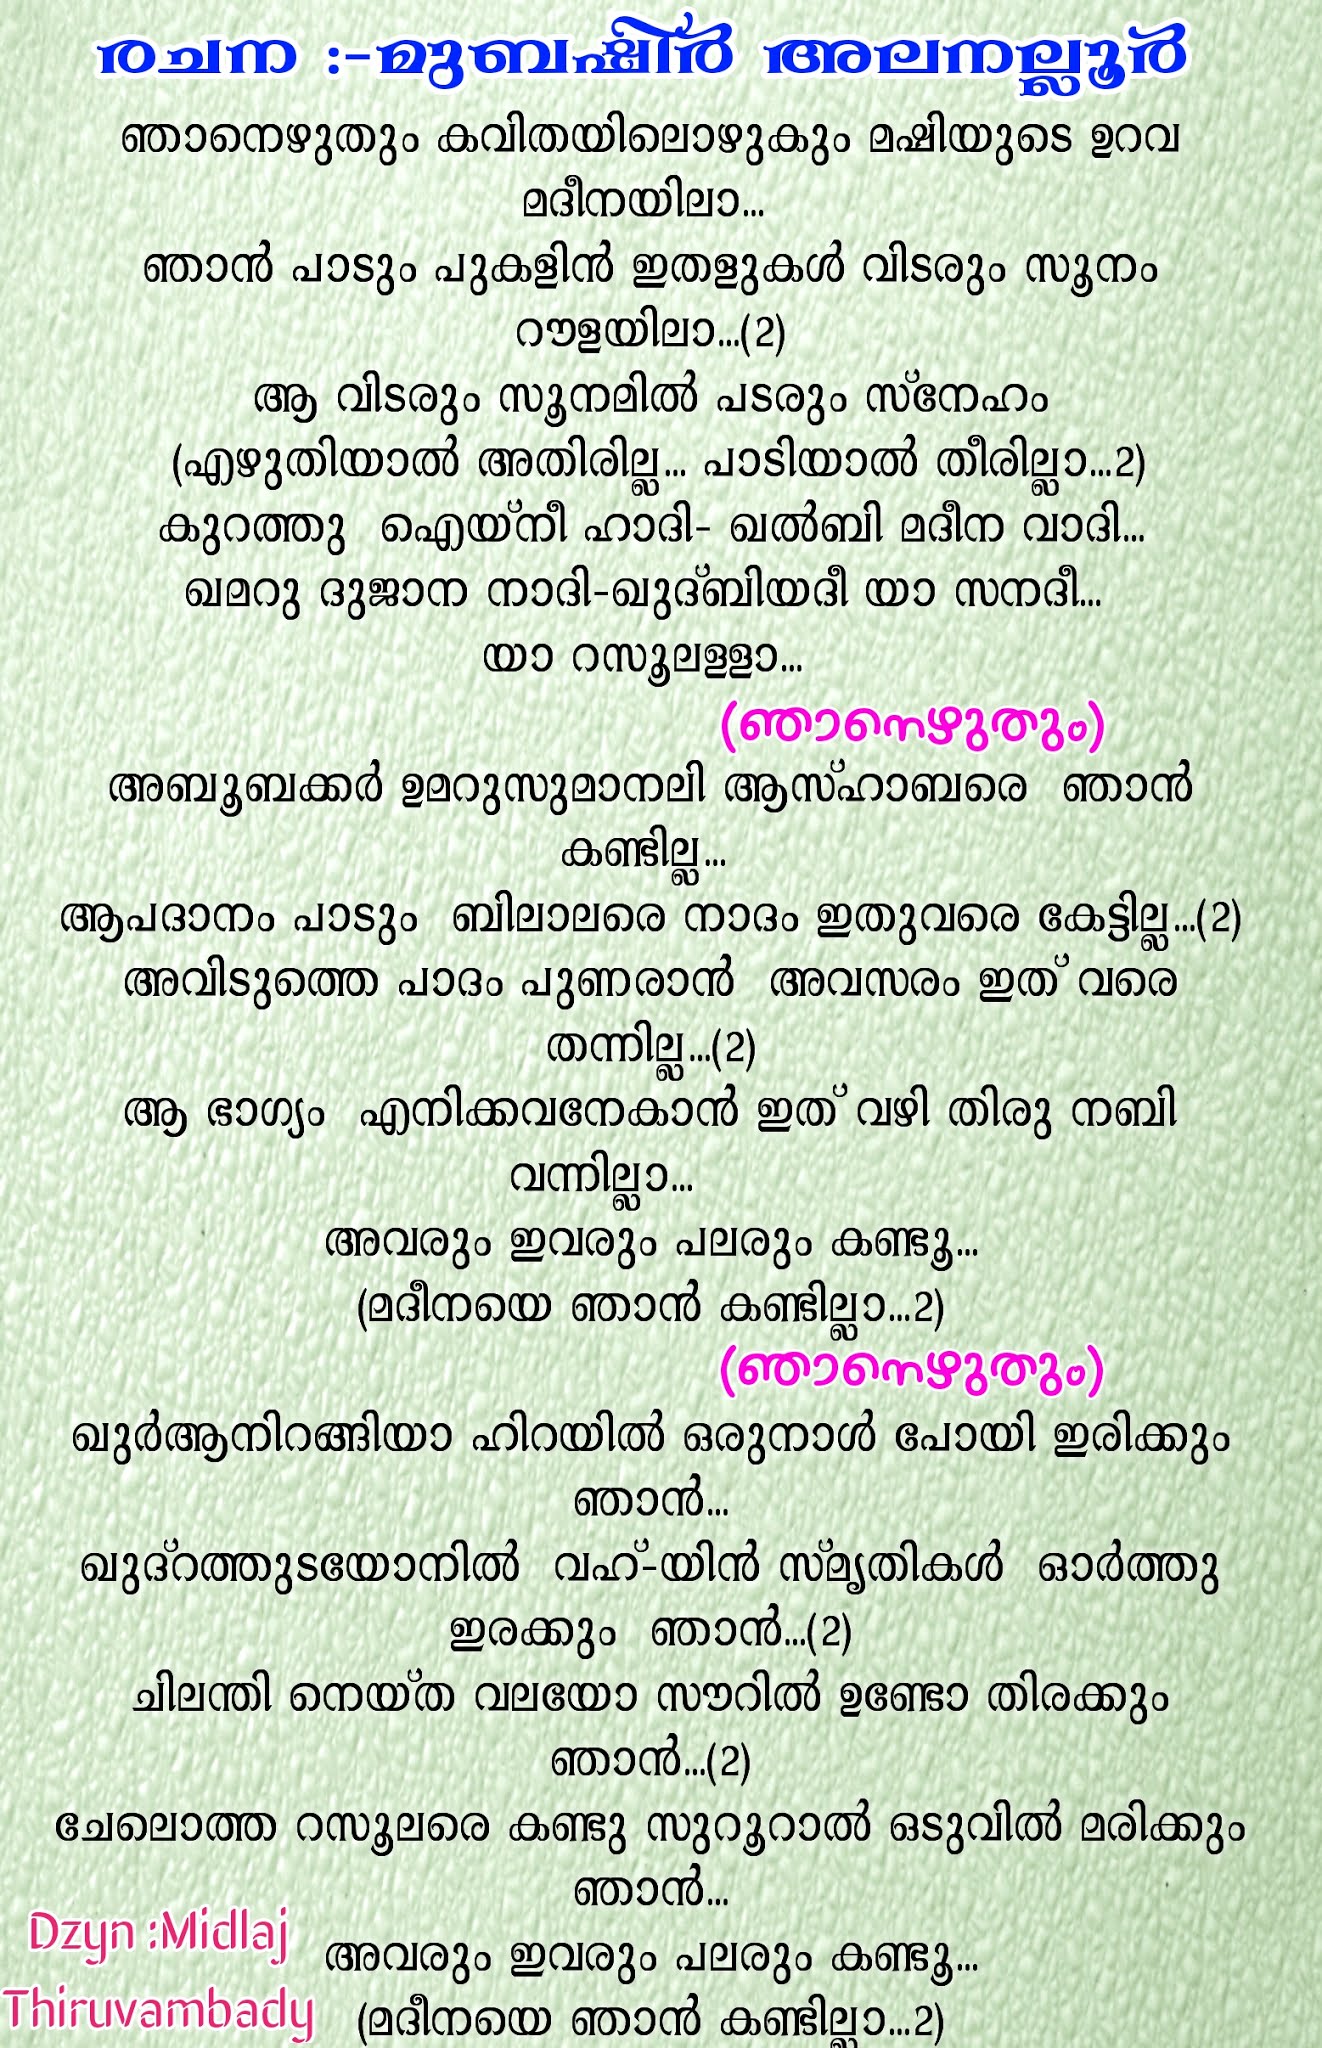 ഞാനെഴുതും കവിതയിലൊഴുകും | Njanezhuthum Kavithayilozhukum | Song Lyrics | Mubashir Alanallur